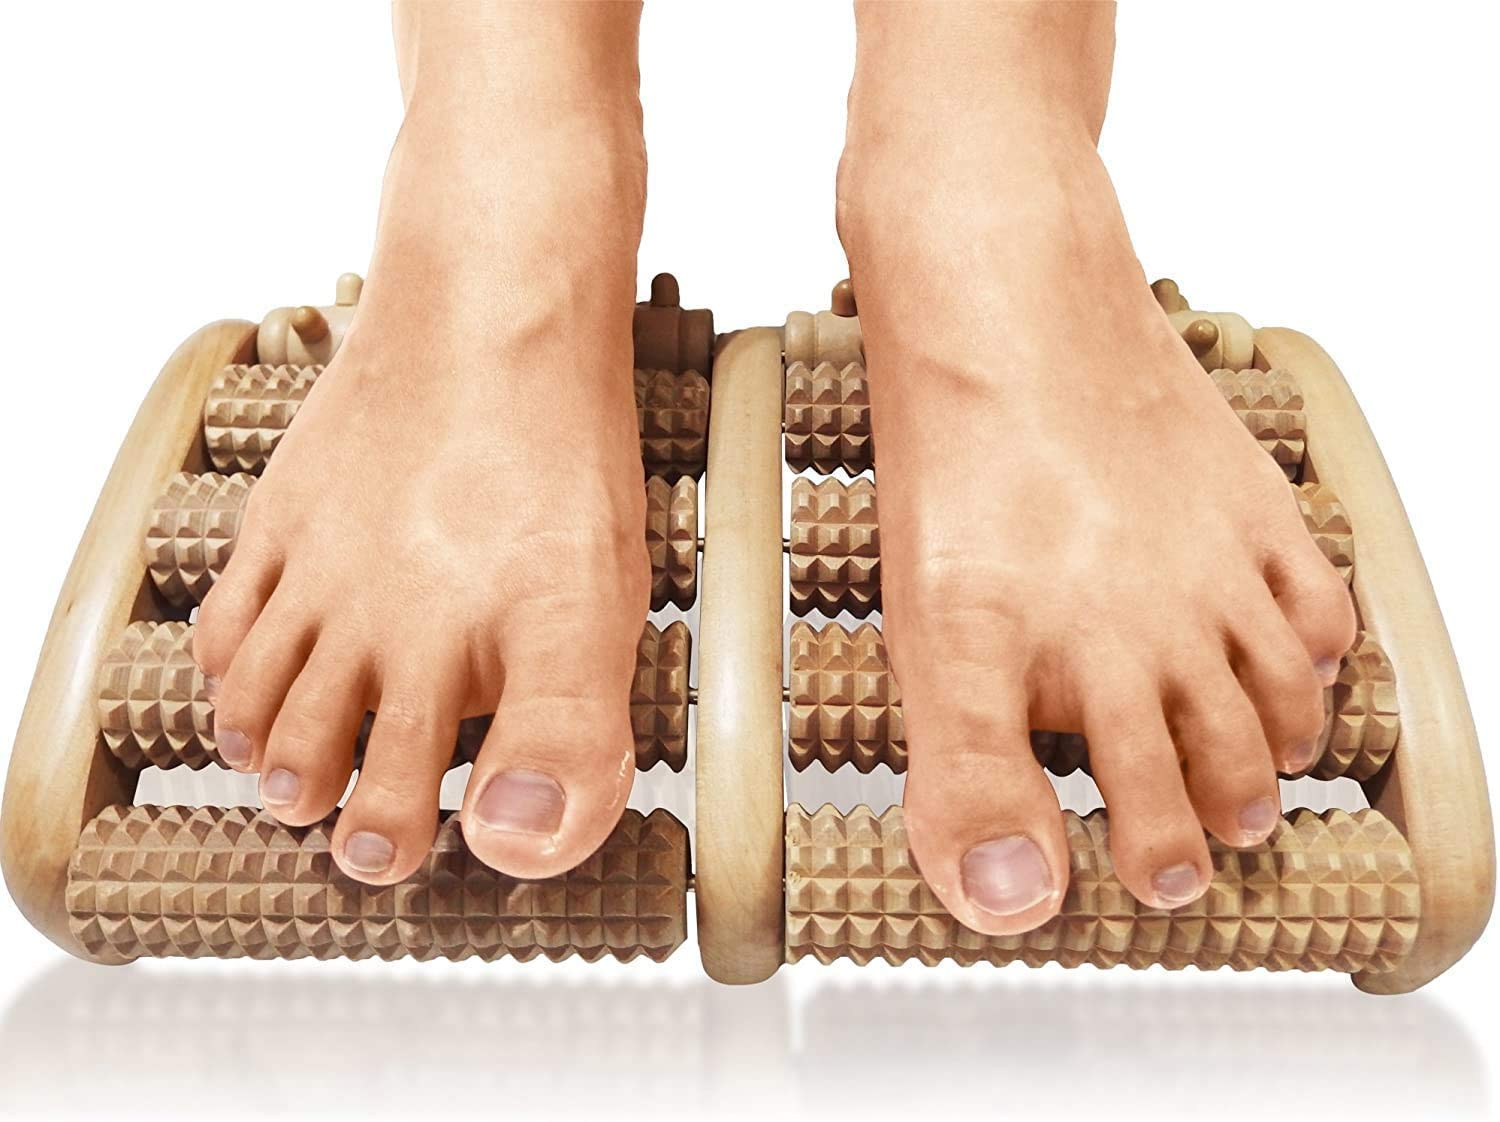 DIY Foot Massage : TheraFlow Dual Foot Massager Roller